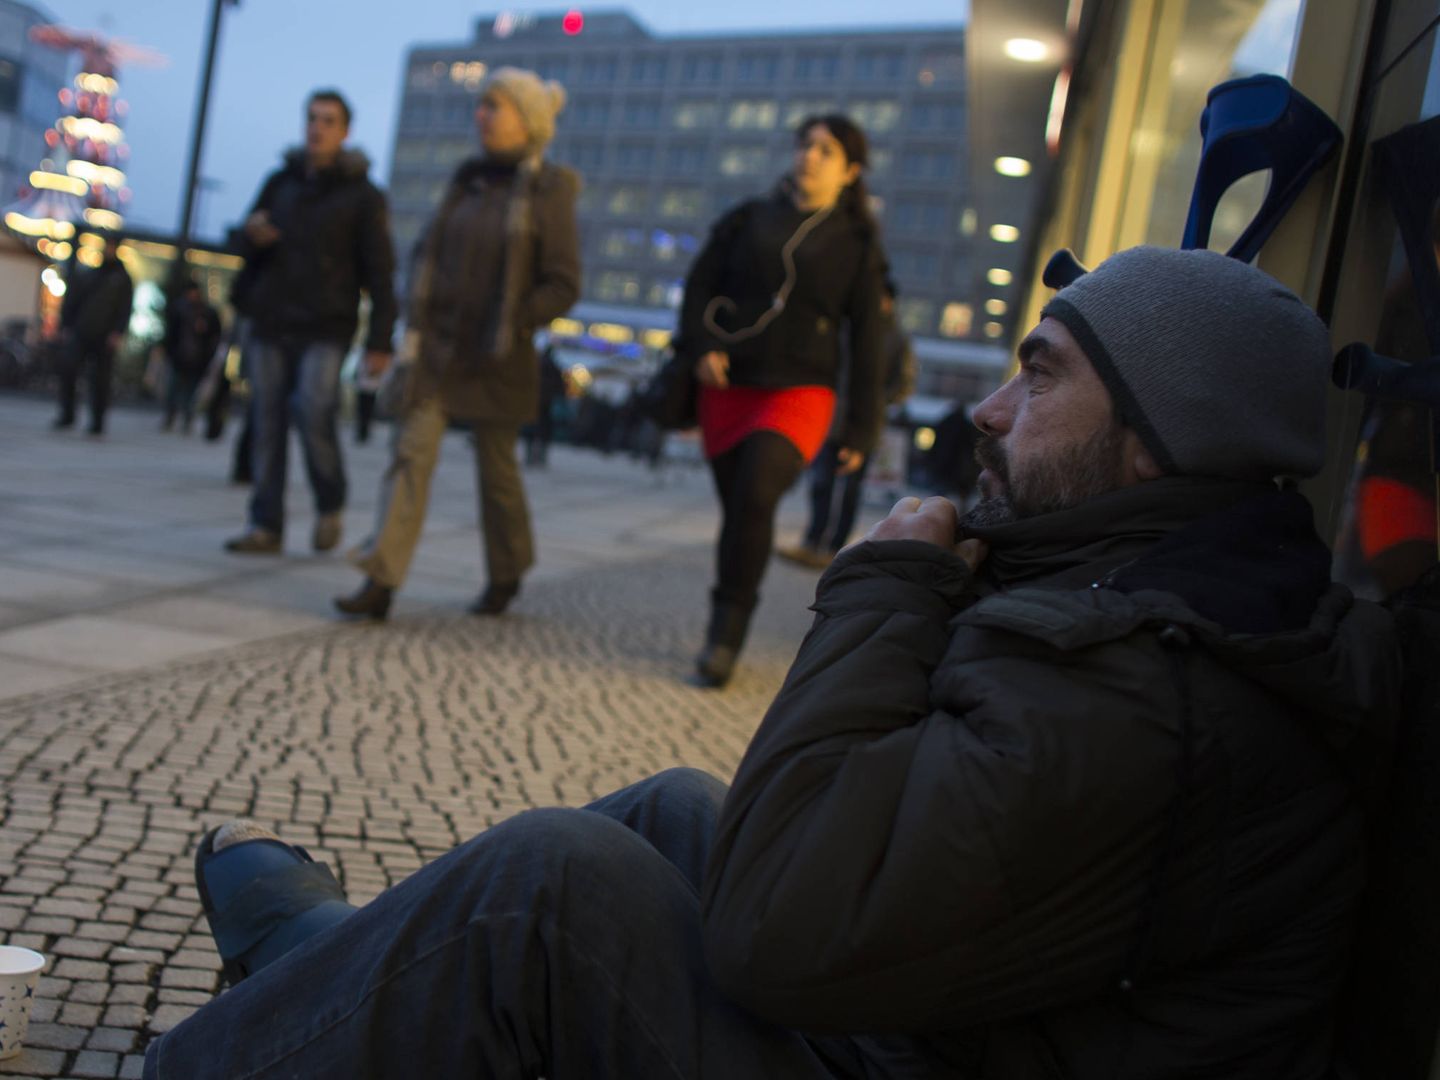 Un vagabundo pide limosna en Alexanderplatz, una gran plaza ubicada en el centro de Berlín. (Reuters)